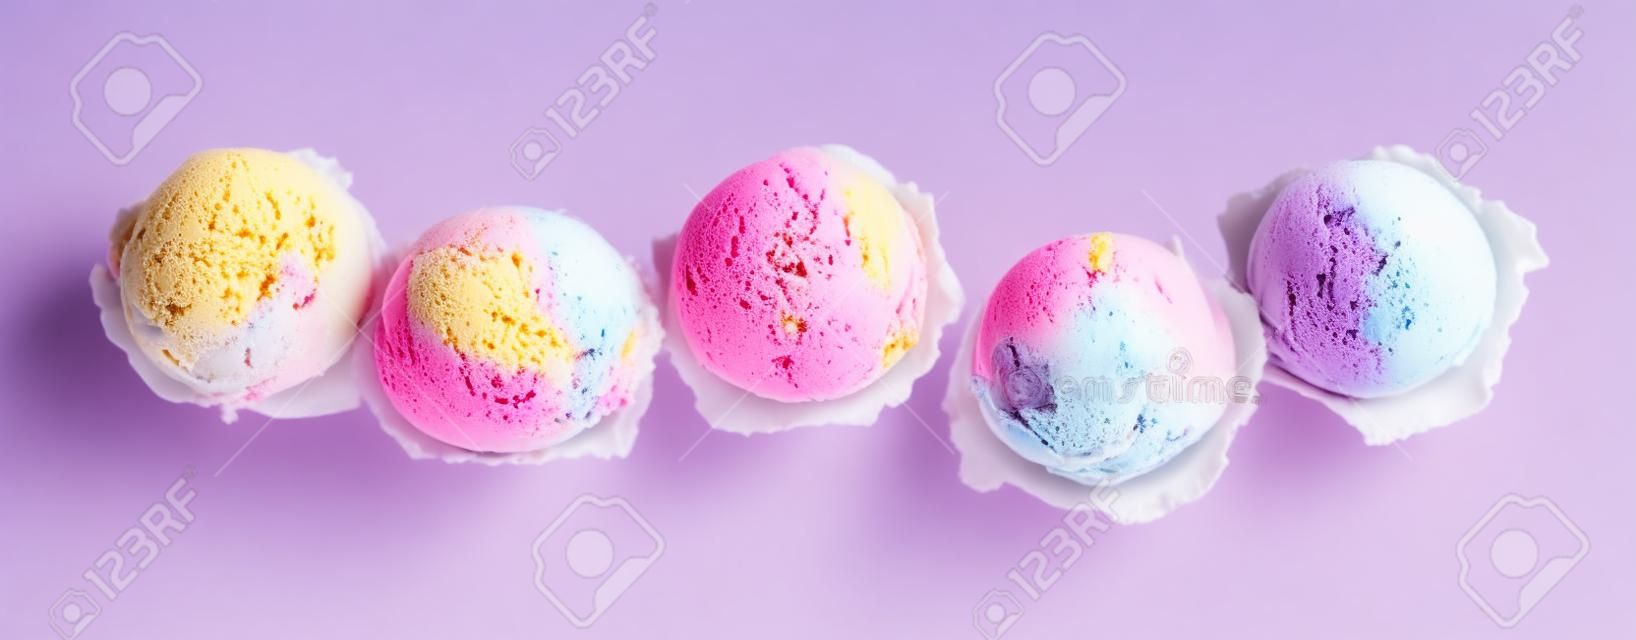 Alto ângulo ainda vida vista de cinco colheres de sorvete colorido e refrescante na frente do fundo branco